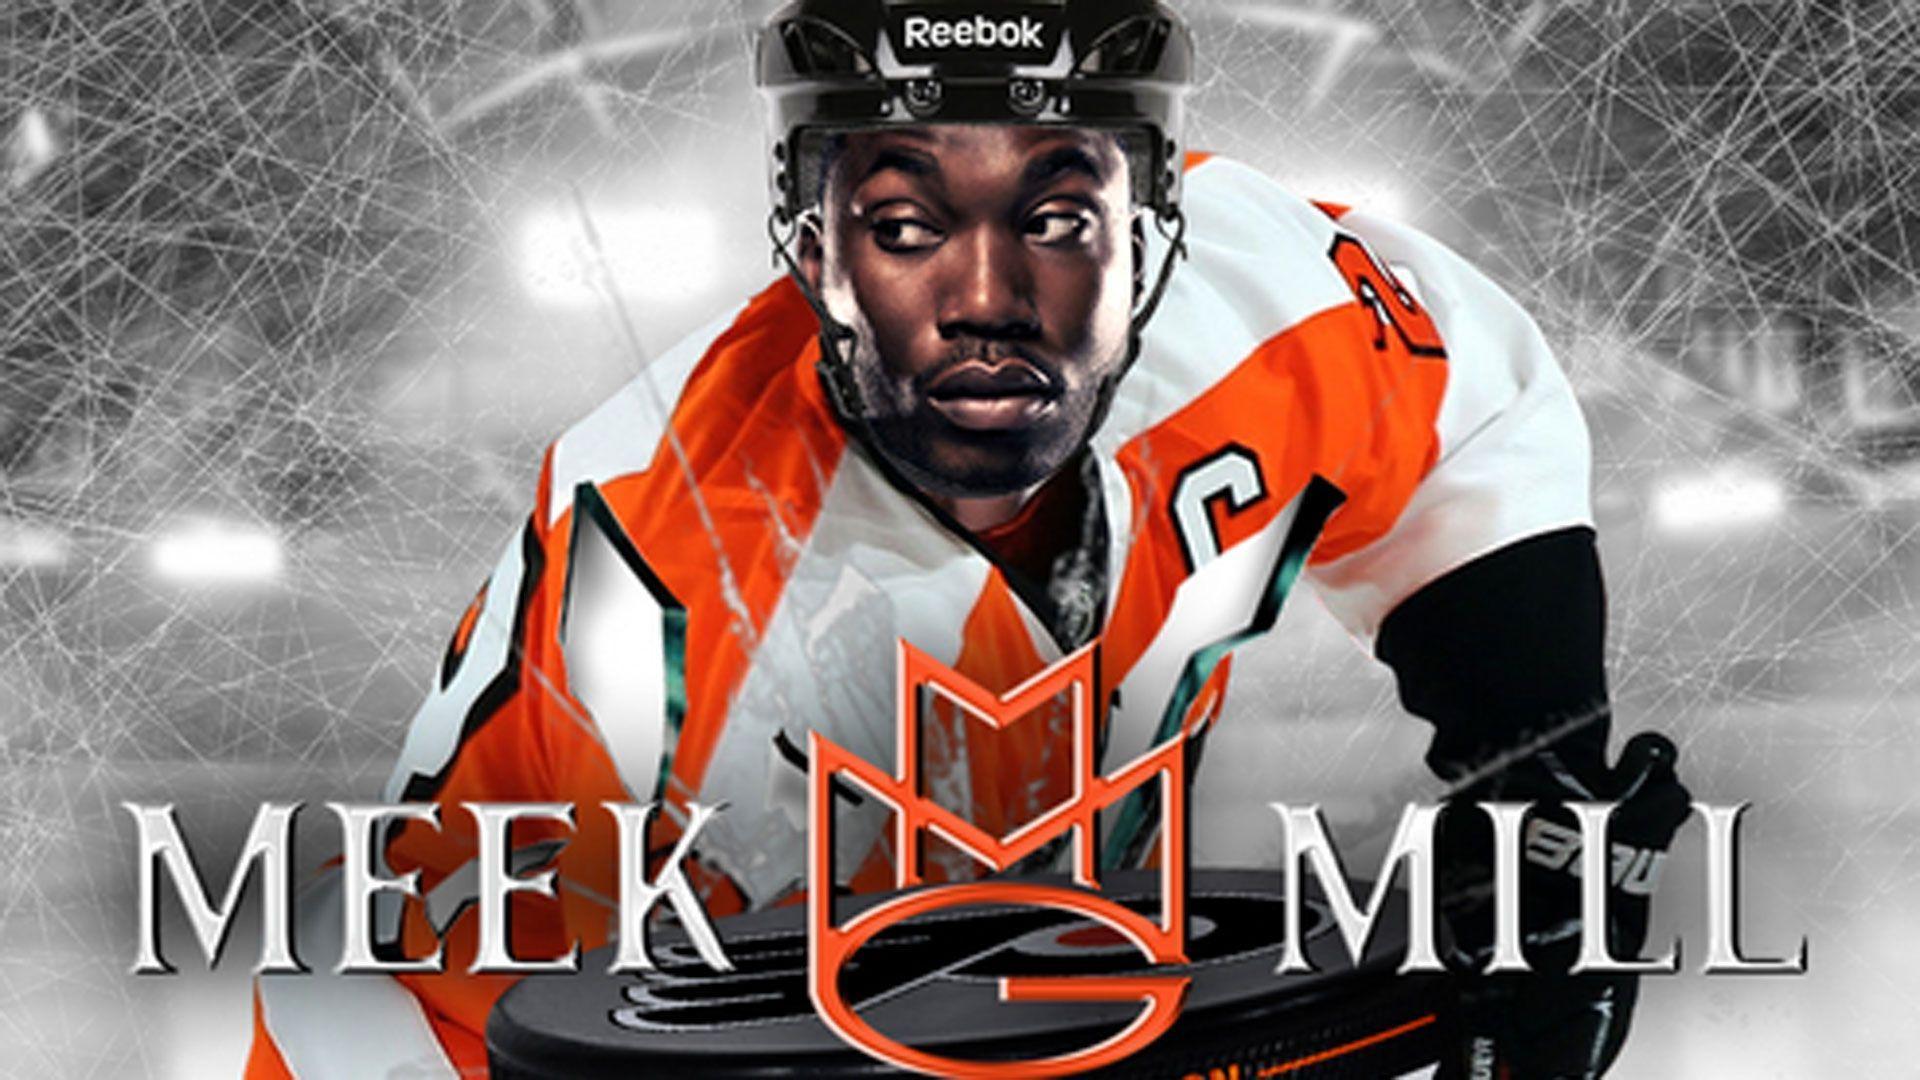 Meek Mill is a 'Philadelphia Flyer' on mixtape cover; MMG hockey